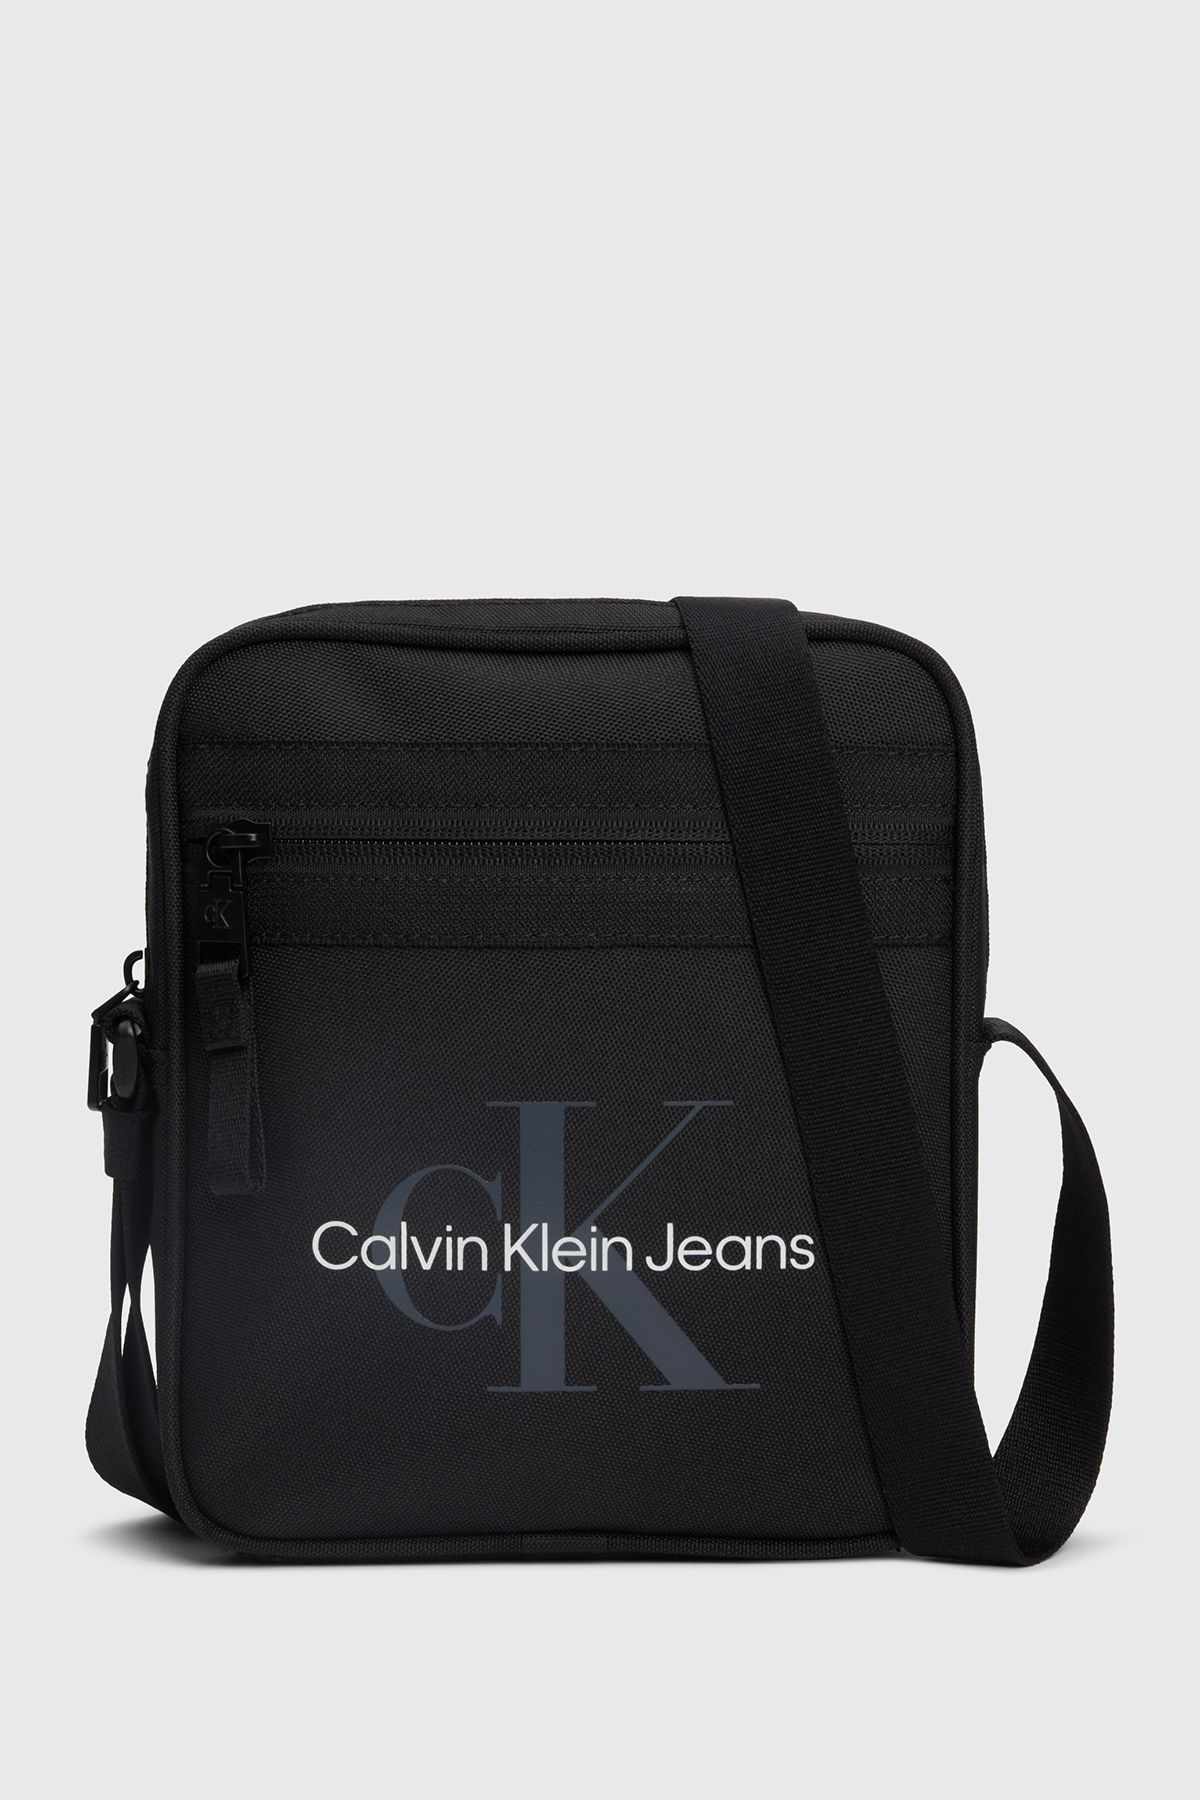 Calvin Klein SPORT ESSENTIALS REPORTER18 M